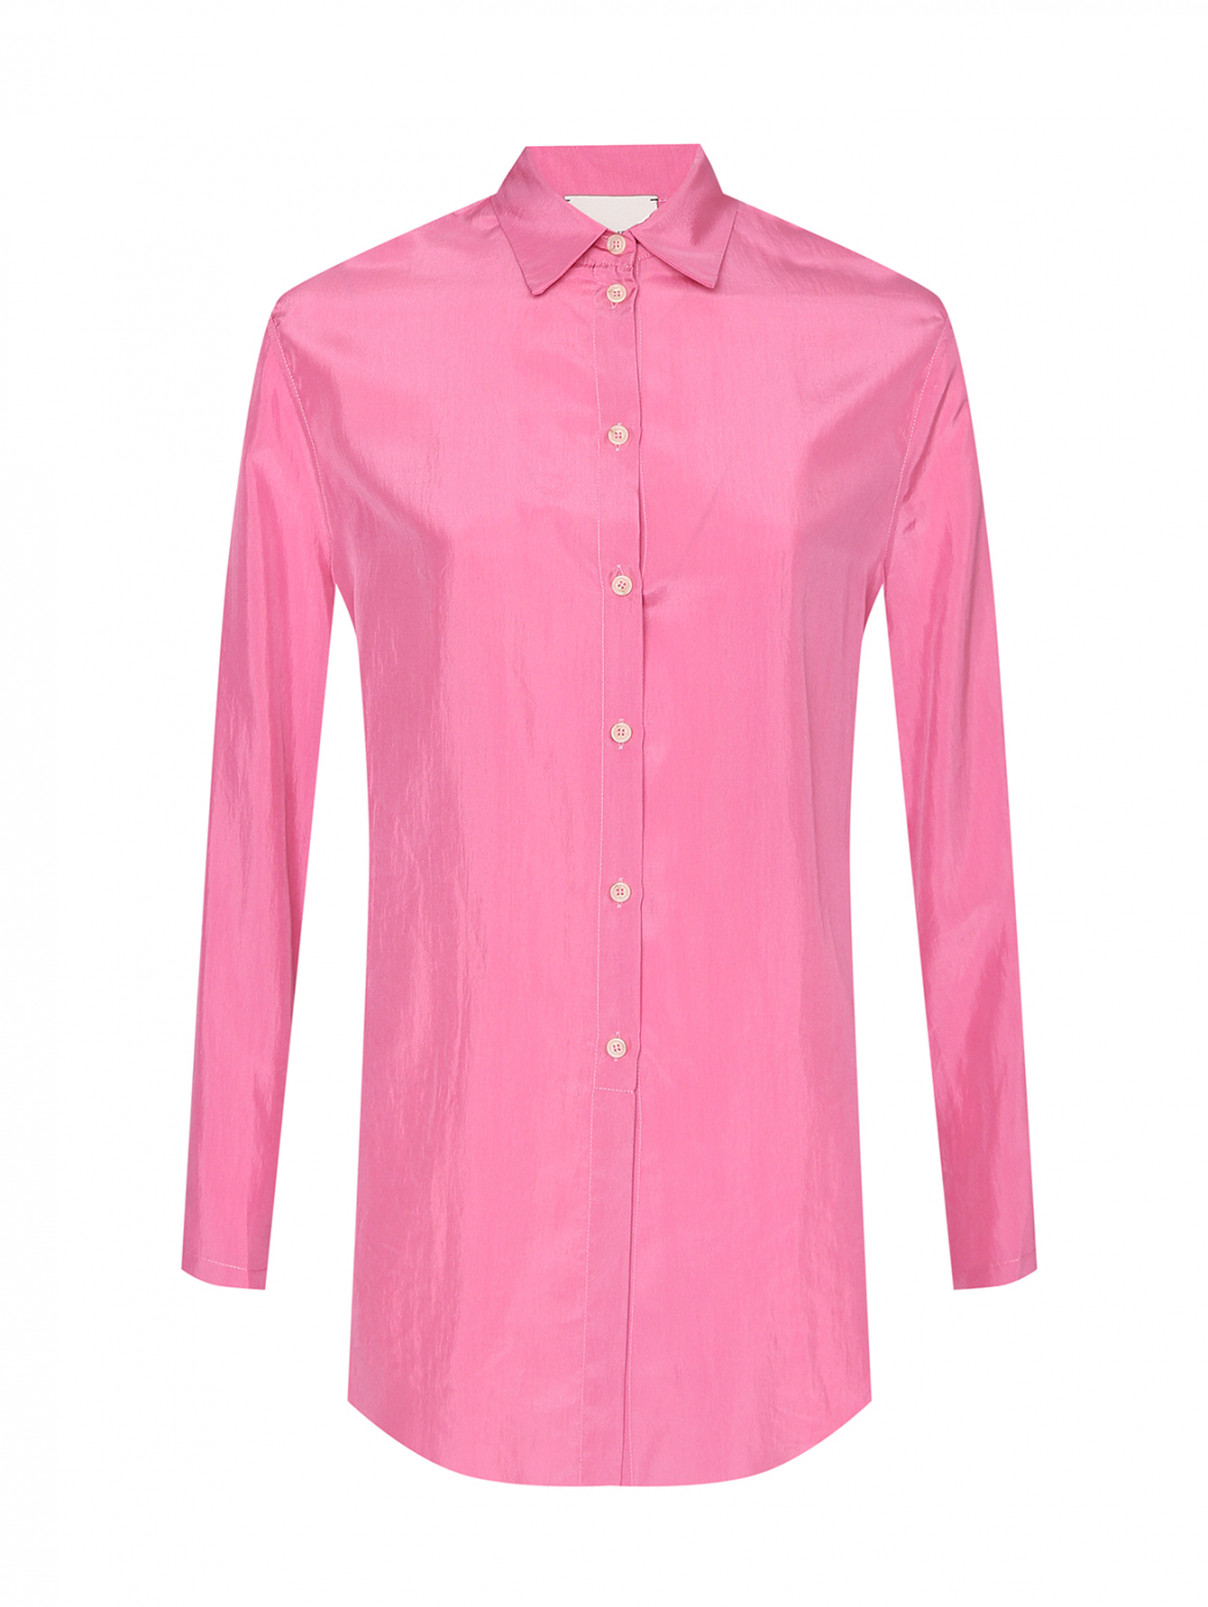 Рубашка из шелка на пуговицах Alysi  –  Общий вид  – Цвет:  Розовый